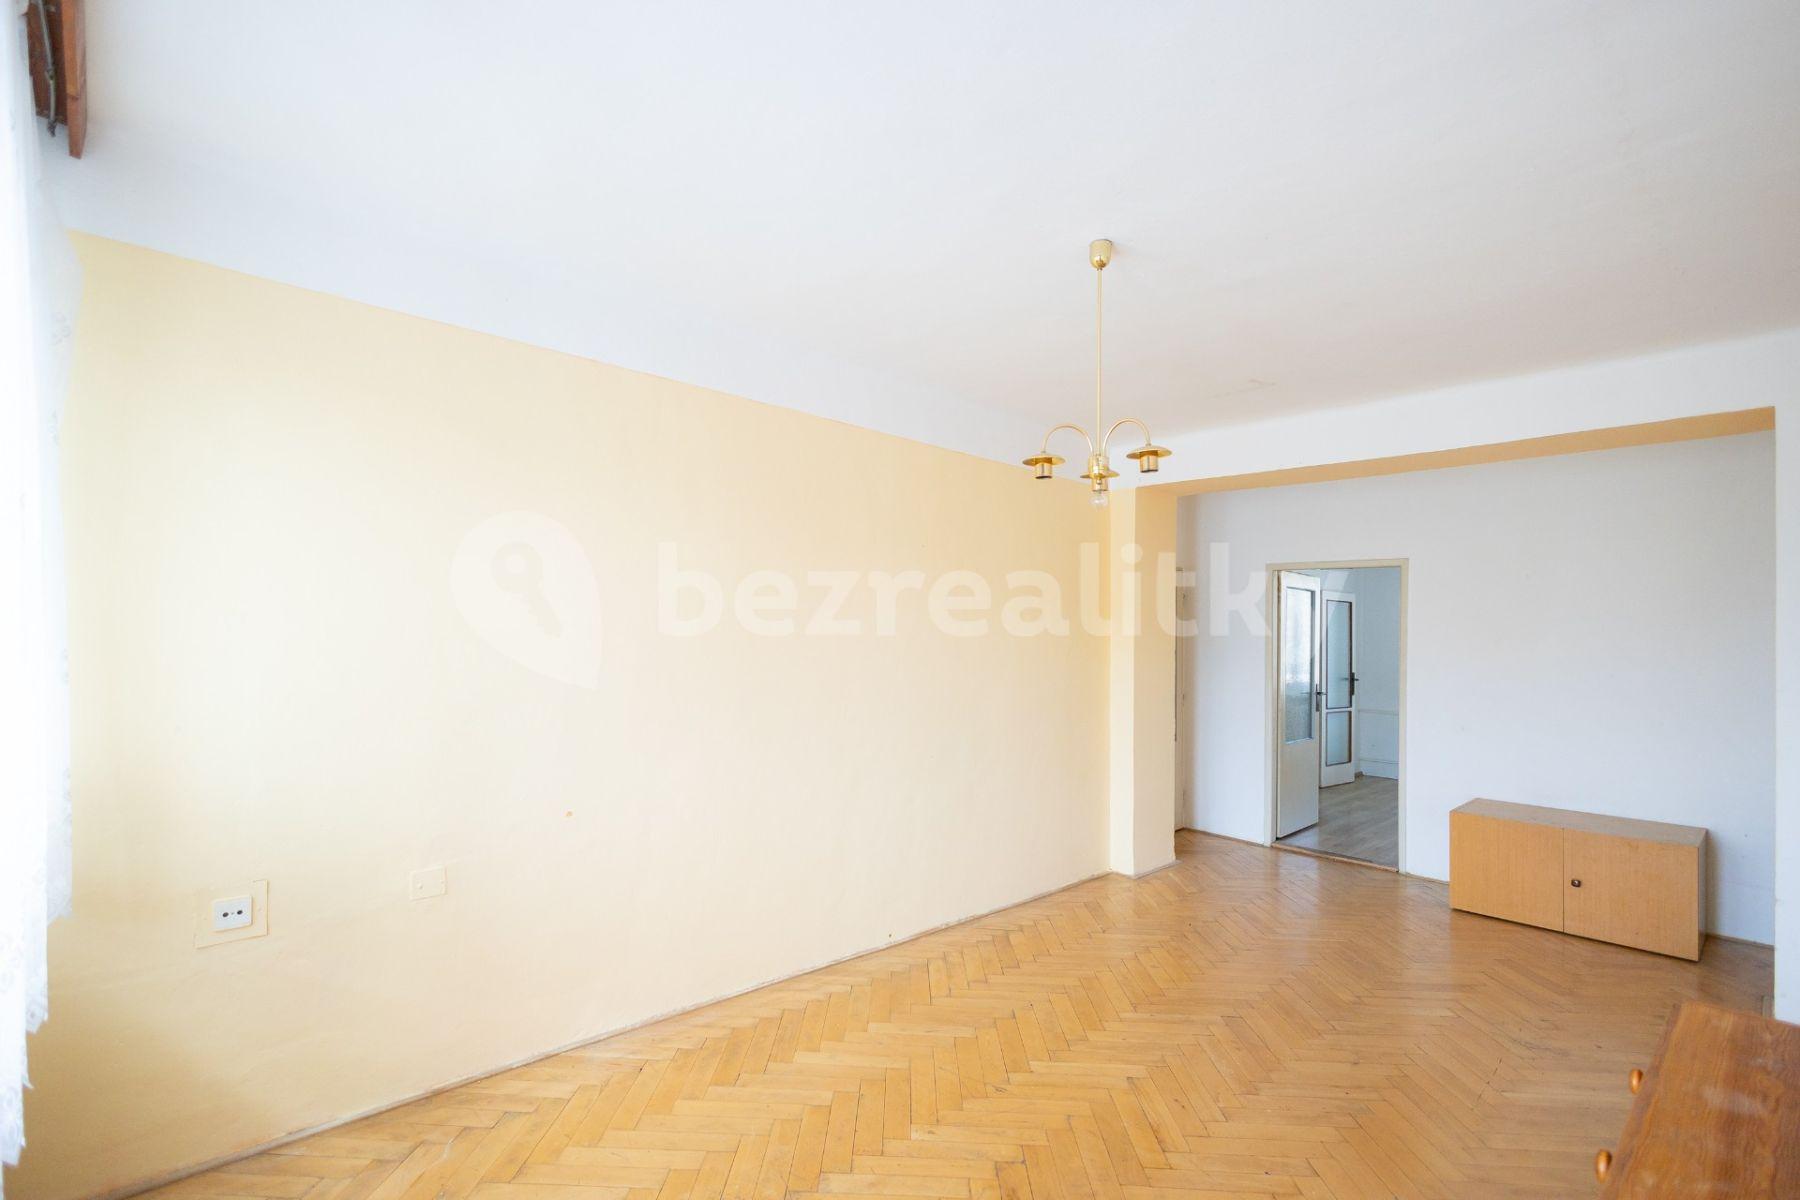 2 bedroom flat for sale, 54 m², Dělnické nám., Třebíč, Vysočina Region